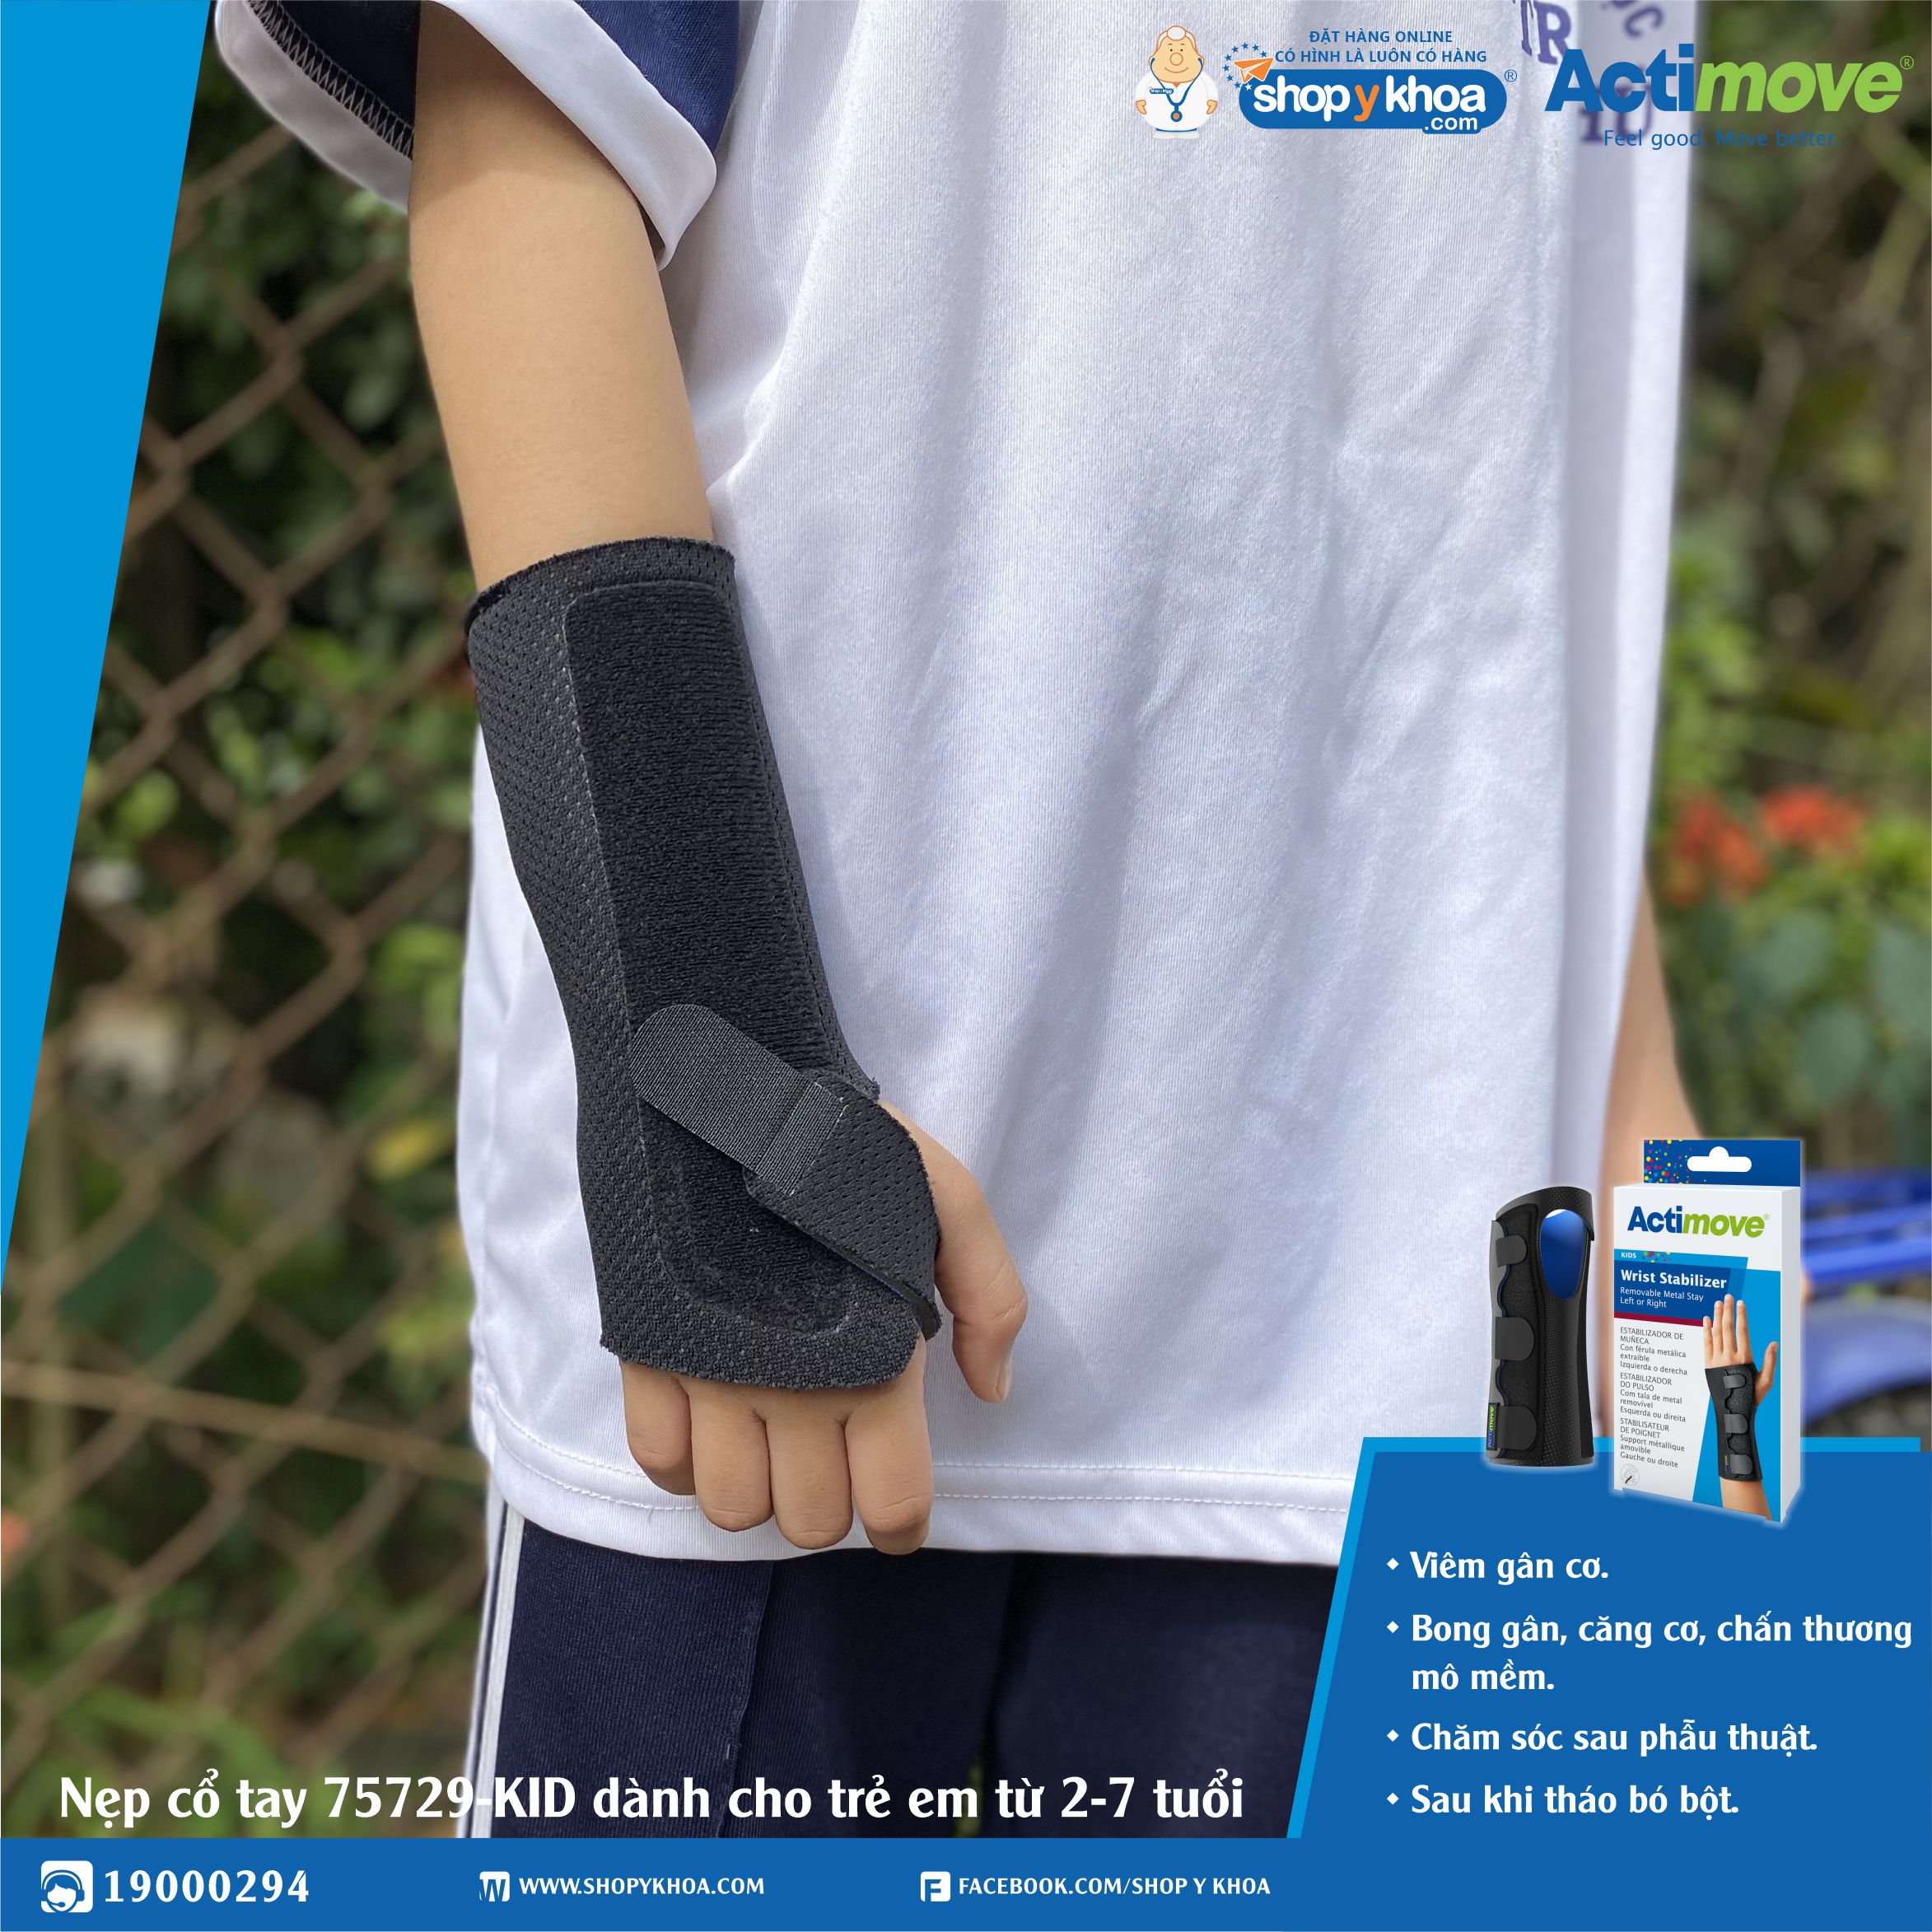 Hình ảnh Nẹp cổ tay 75729-KID dành cho trẻ em từ 2-7 tuổi Actimove Wrist Stabilizer